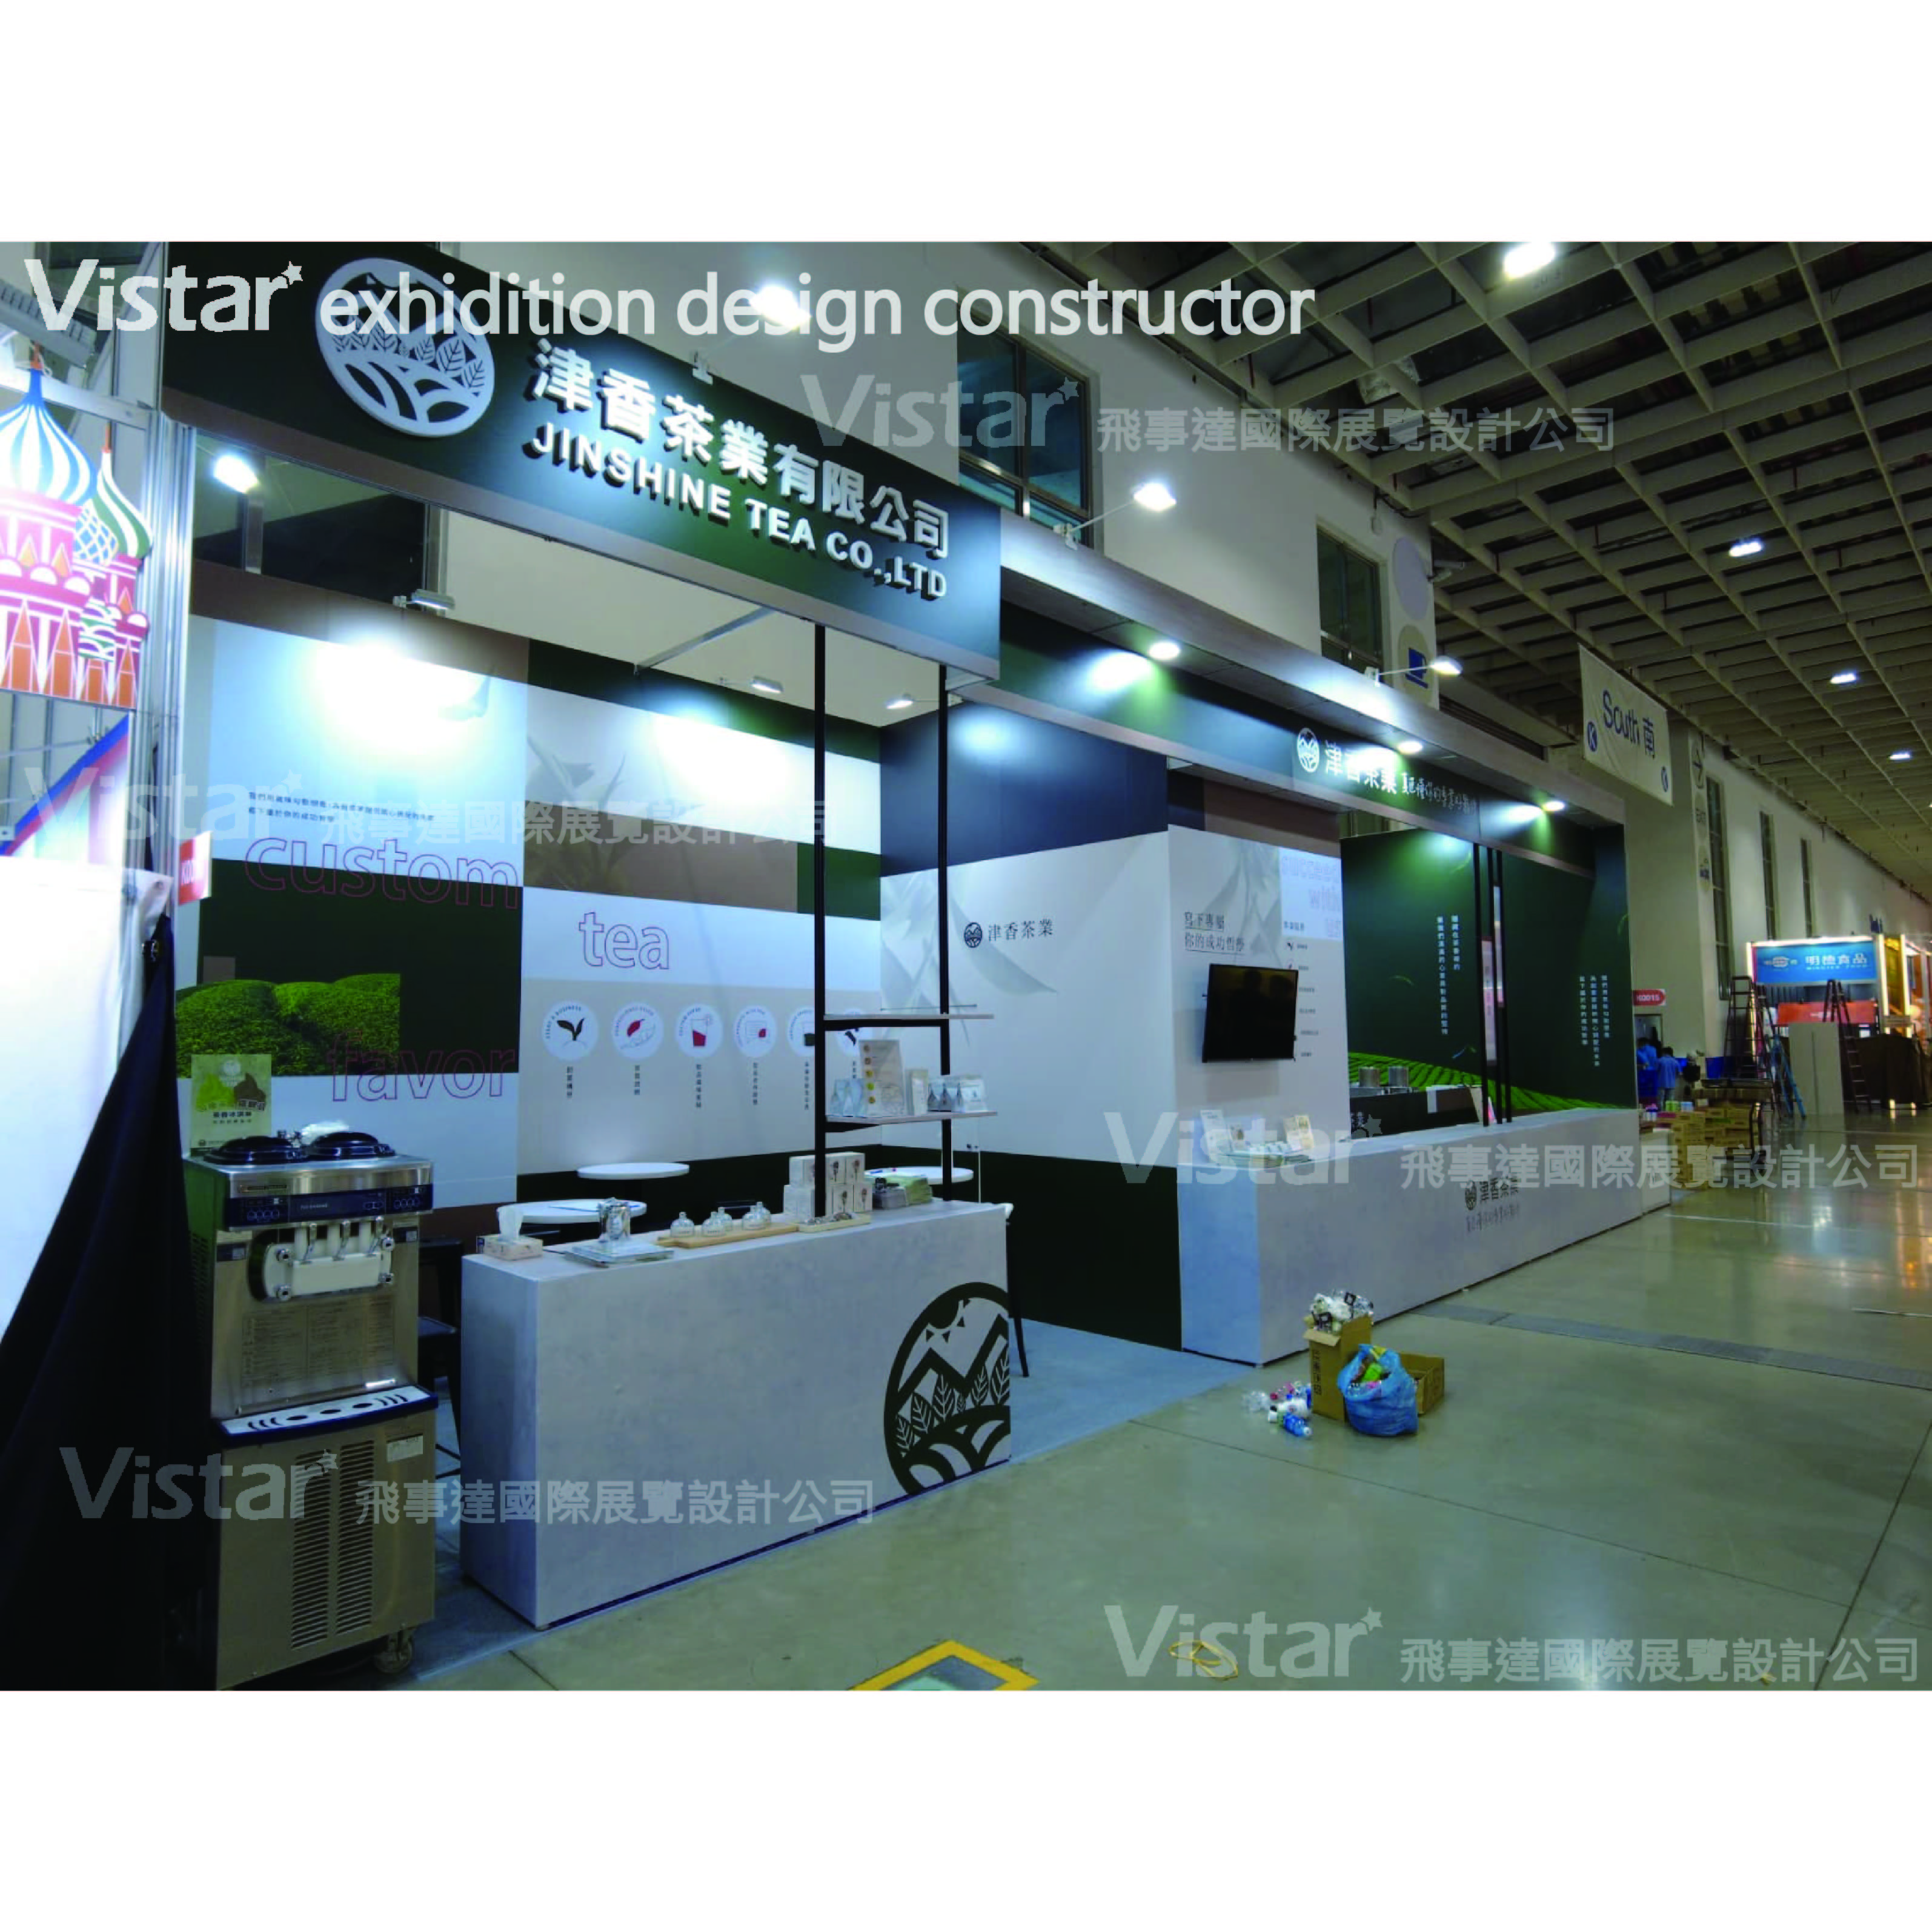 2023 台北國際食品系列展 Food Taipei Mega Shows, 飛事達國際展覽設計有限公司, www.vistargp.com